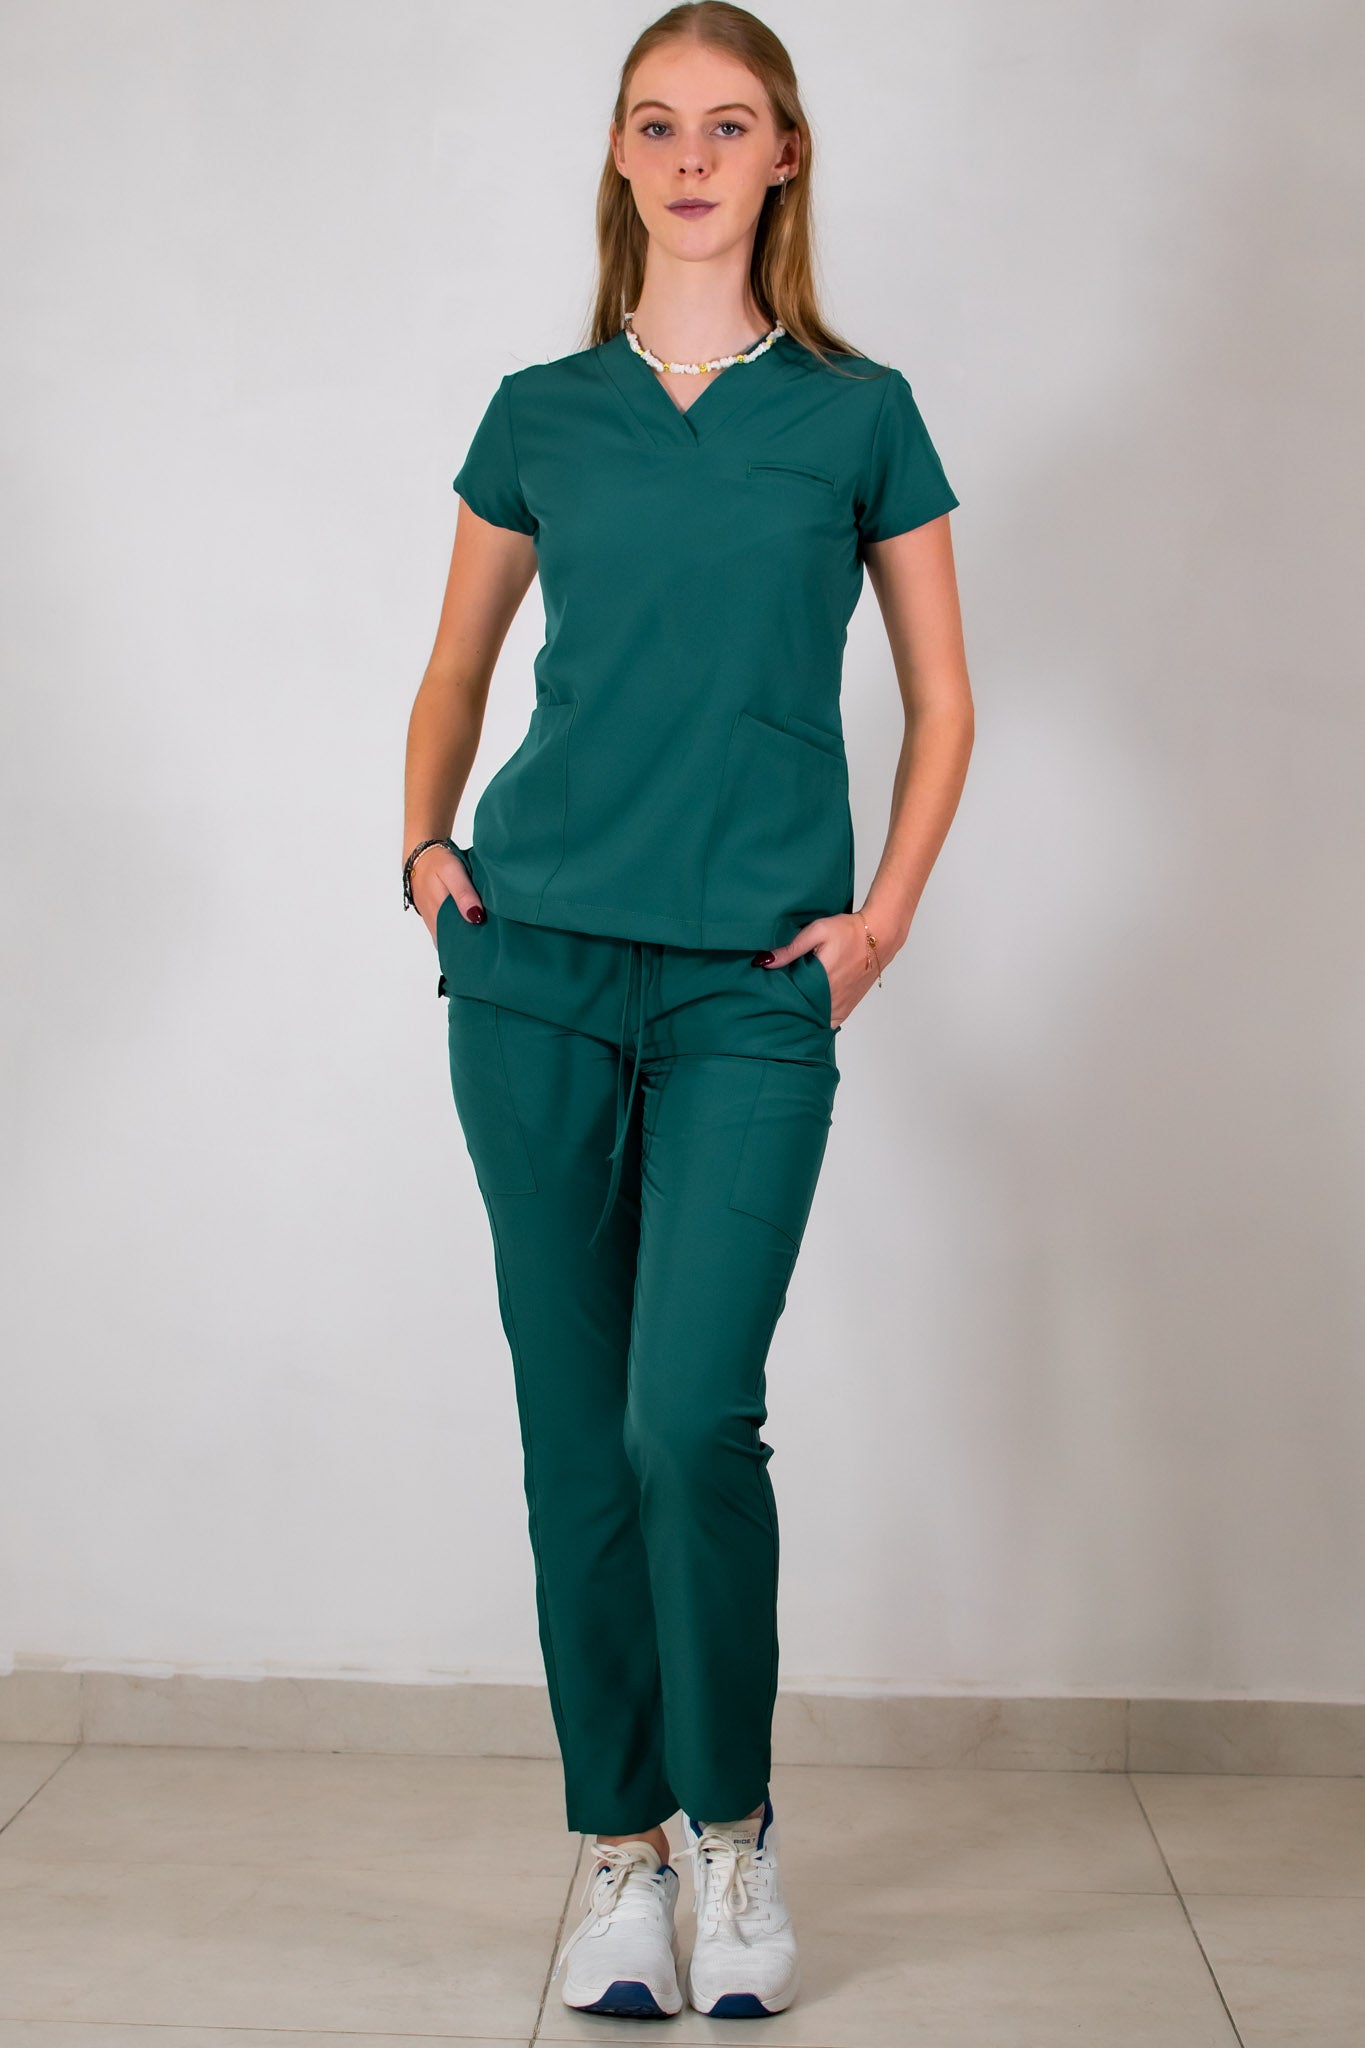 uniformes para enfermeras